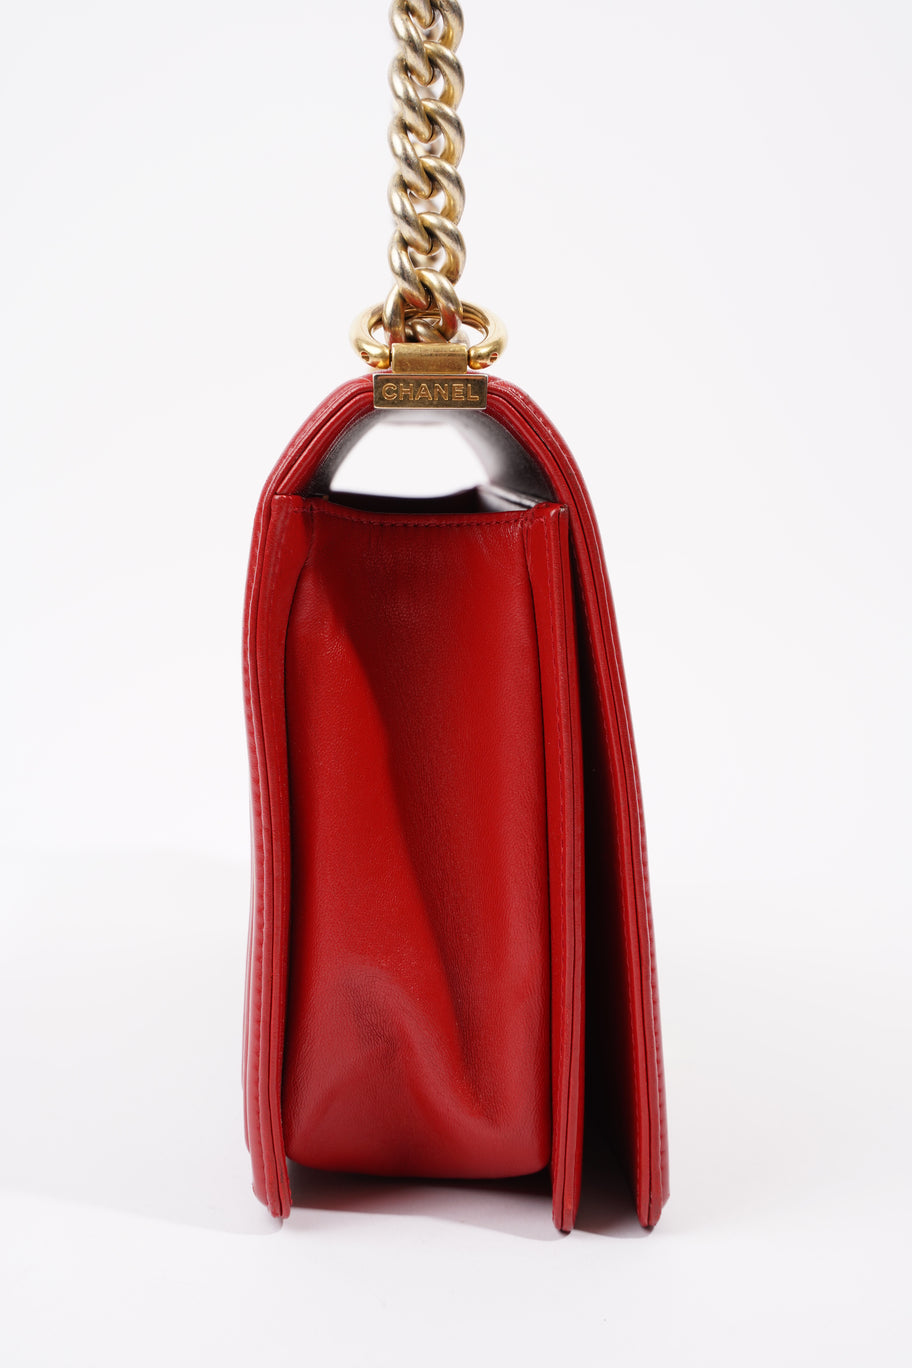 Boy Bag Red Calfskin Leather Large Image 6